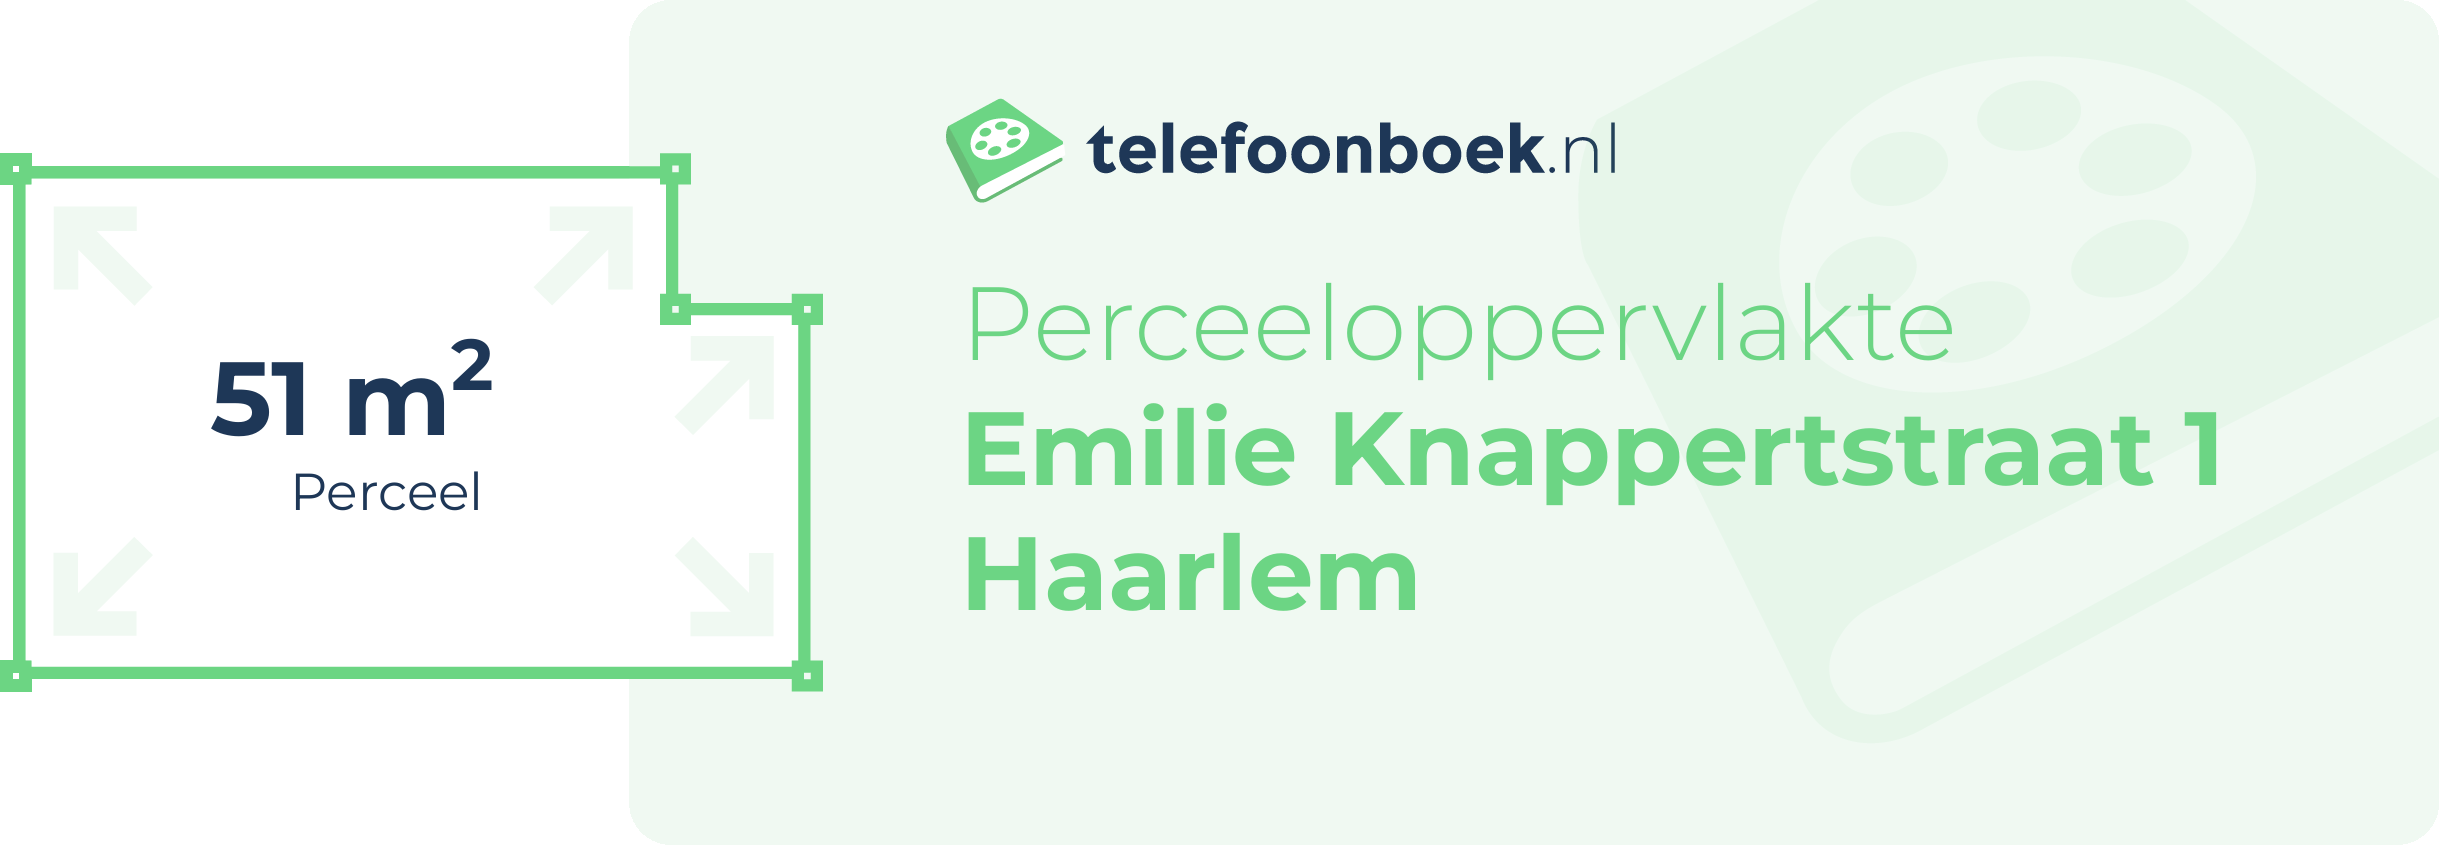 Perceeloppervlakte Emilie Knappertstraat 1 Haarlem